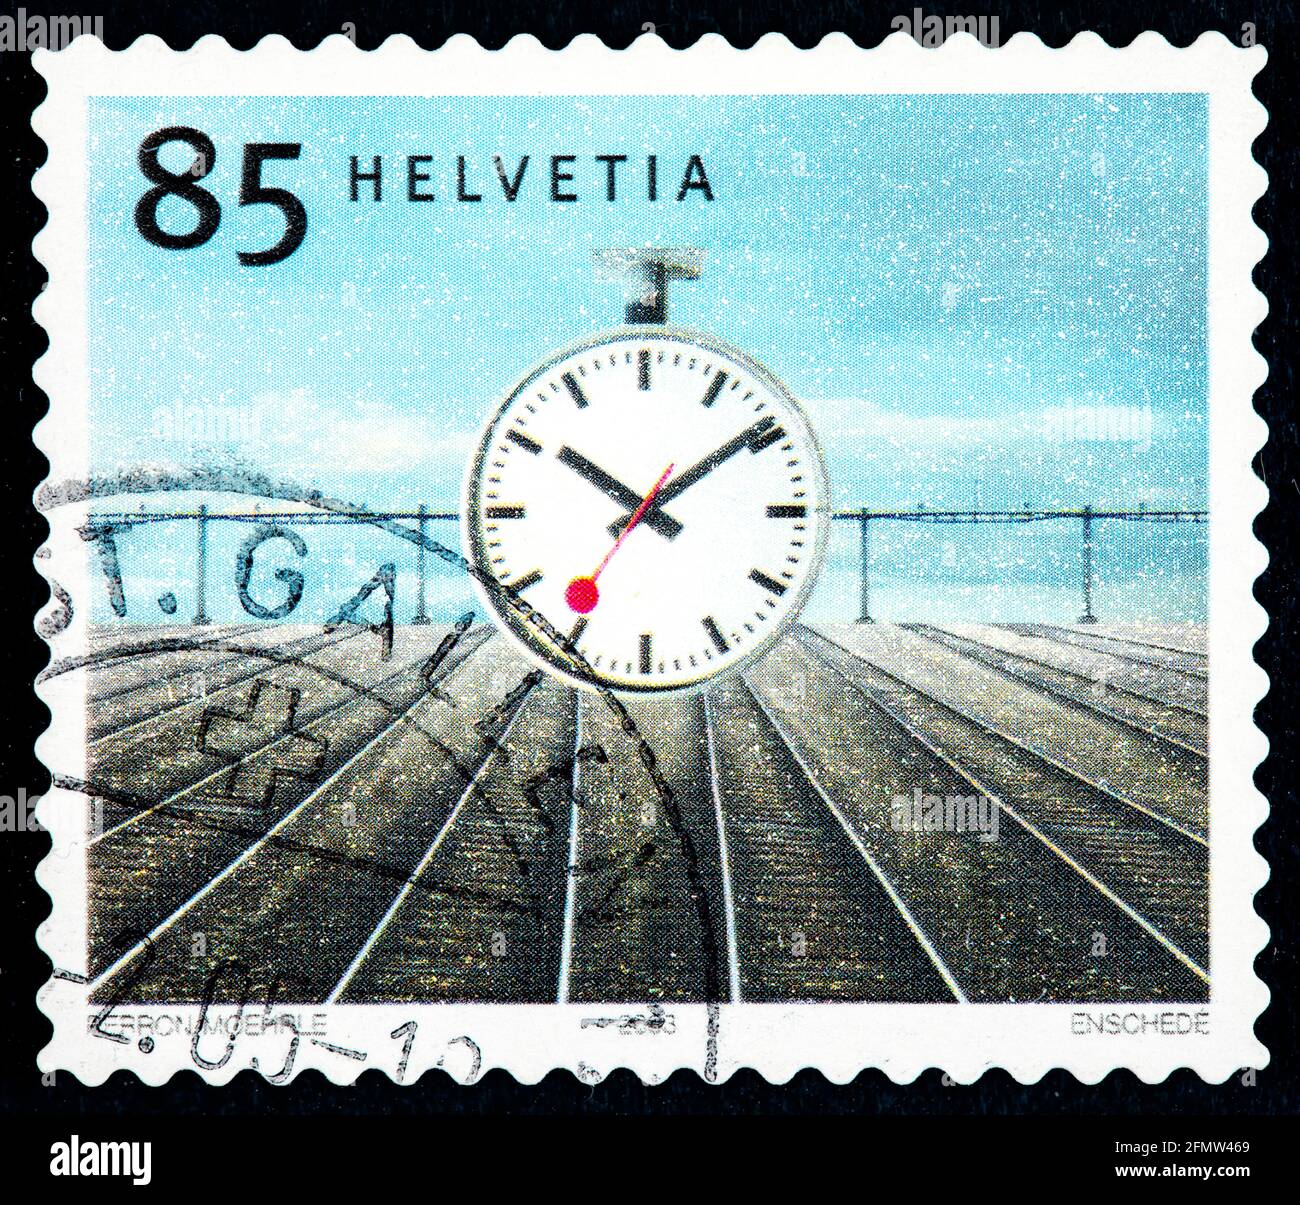 SCHWEIZ - UM 2003: Briefmarke gedruckt von der Schweiz, zeigt Bahnhofsuhr,  von Hanls Hilfiker, um 2003 Stockfotografie - Alamy